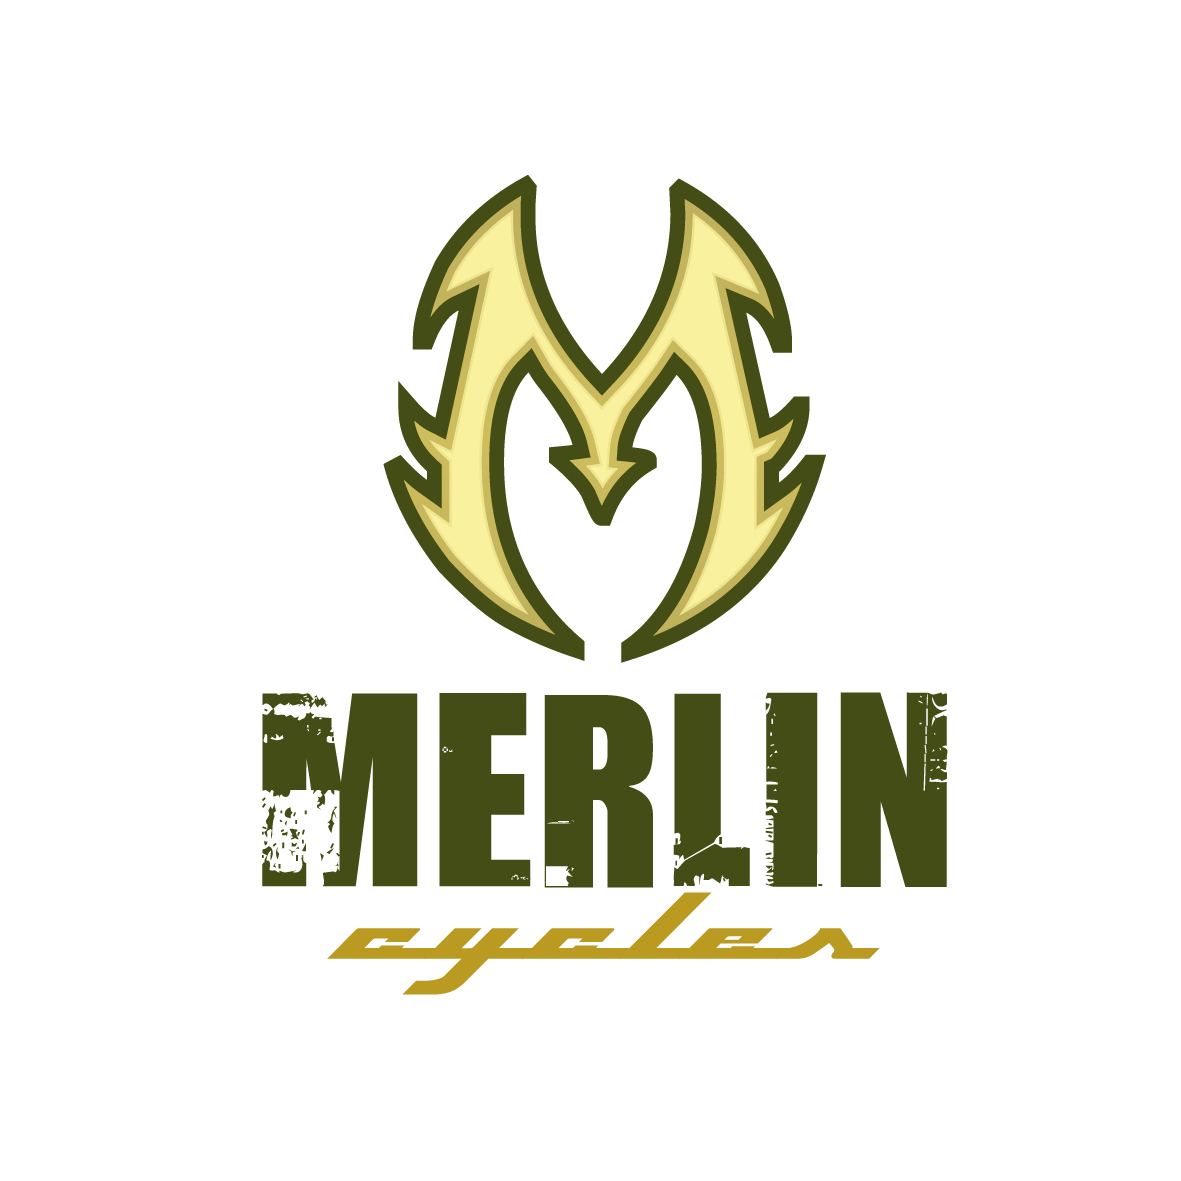 Merlin Cycles